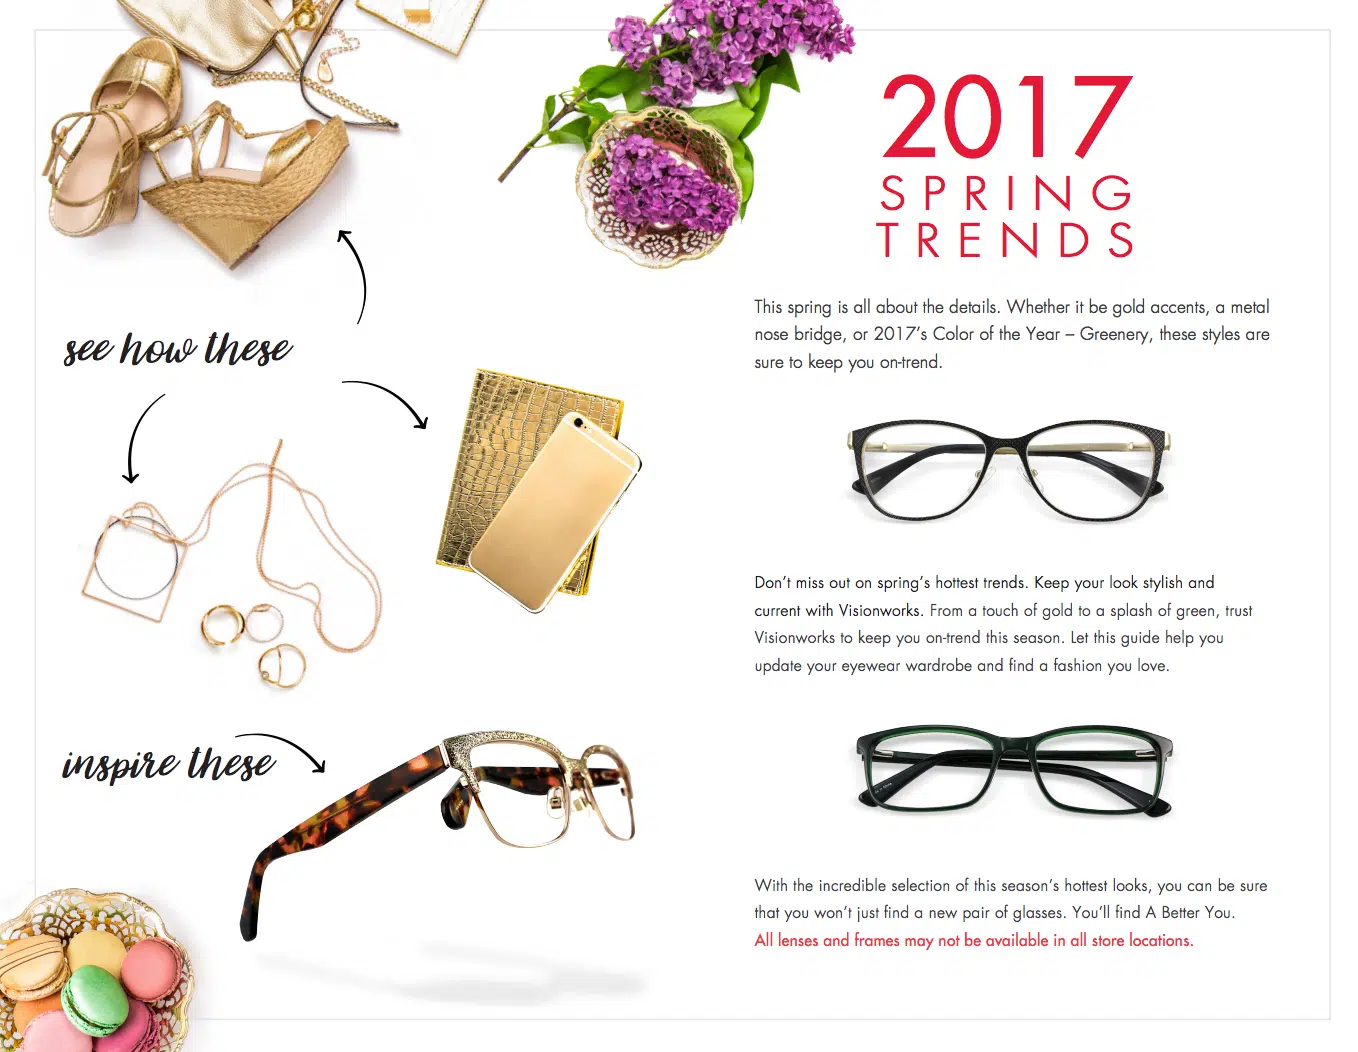 Spring/Summer 2017 Top Trends in Eyewear